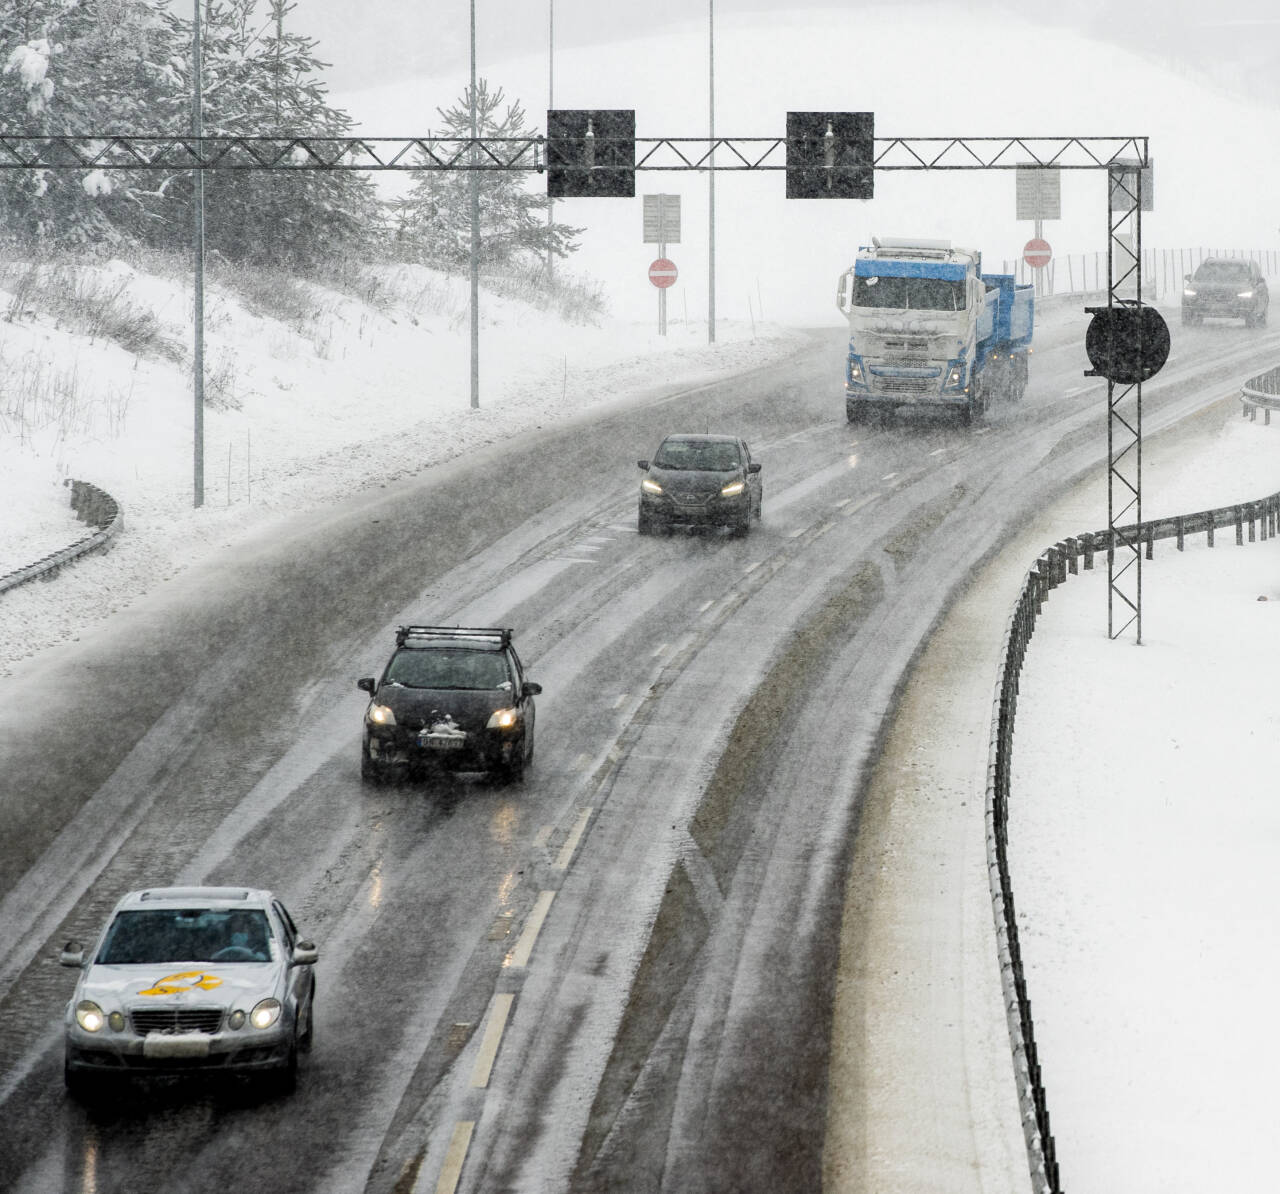 KOMMER BRÅTT PÅ: Vinteren kommer brått på mange bilister, viser en ny undersøkelse. Foto: Berit Roald / NTB